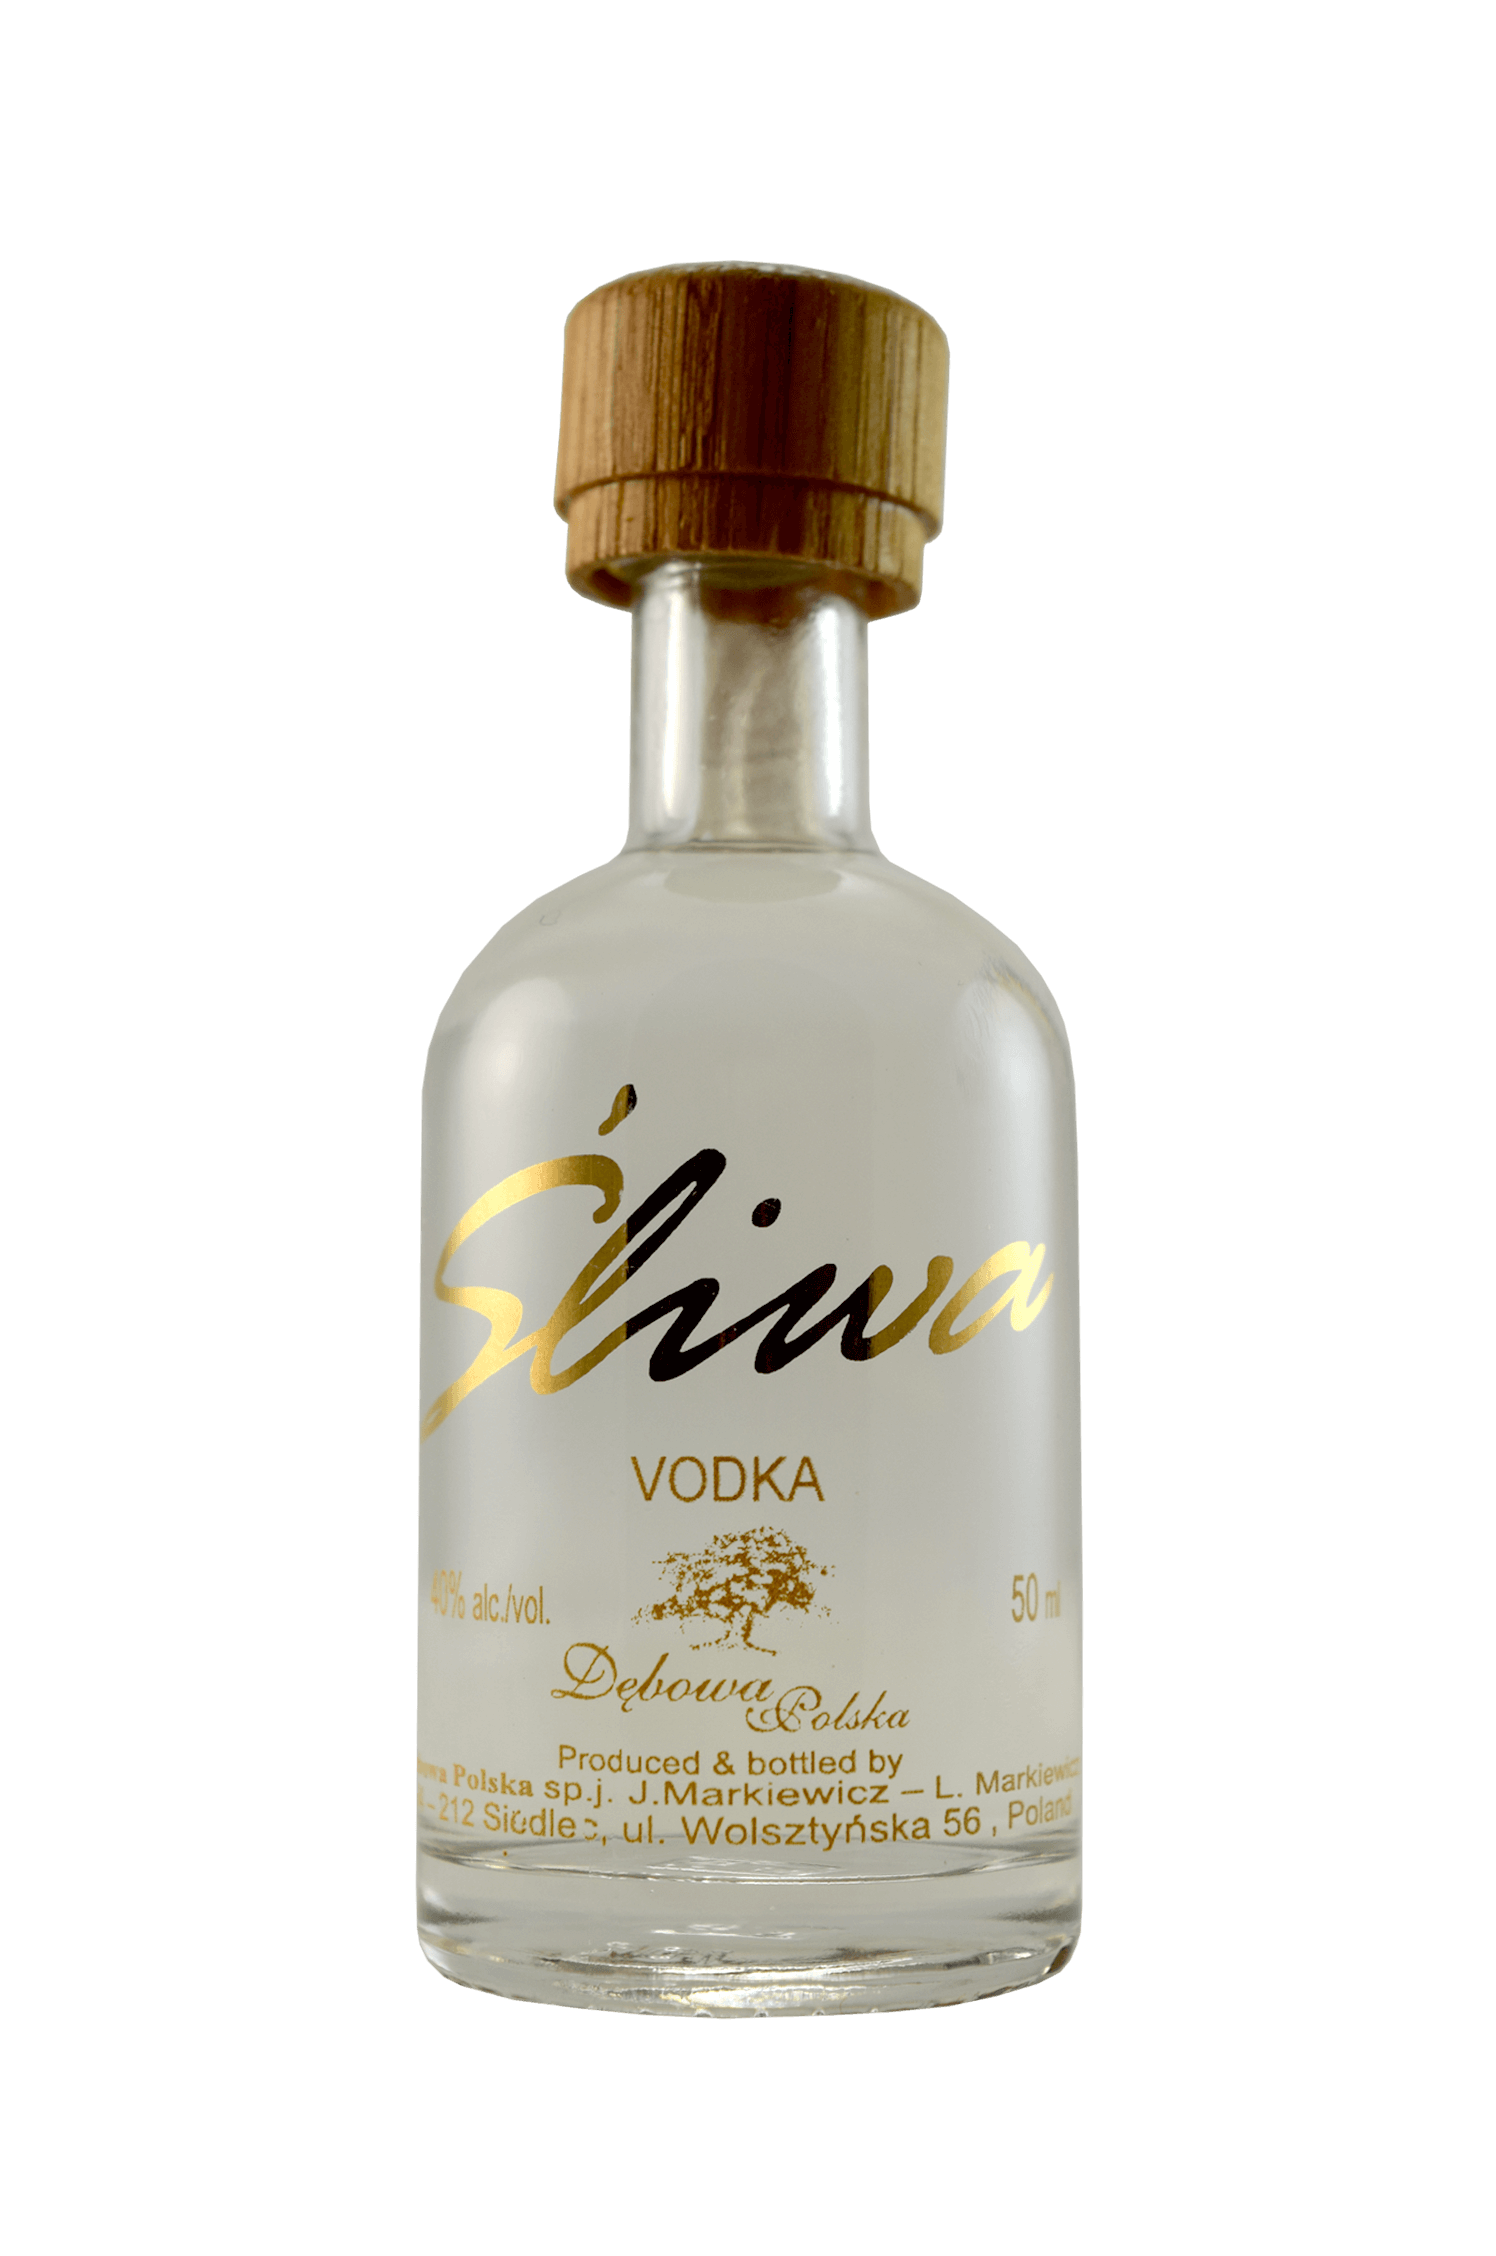 Debowa Šliwa Vodka